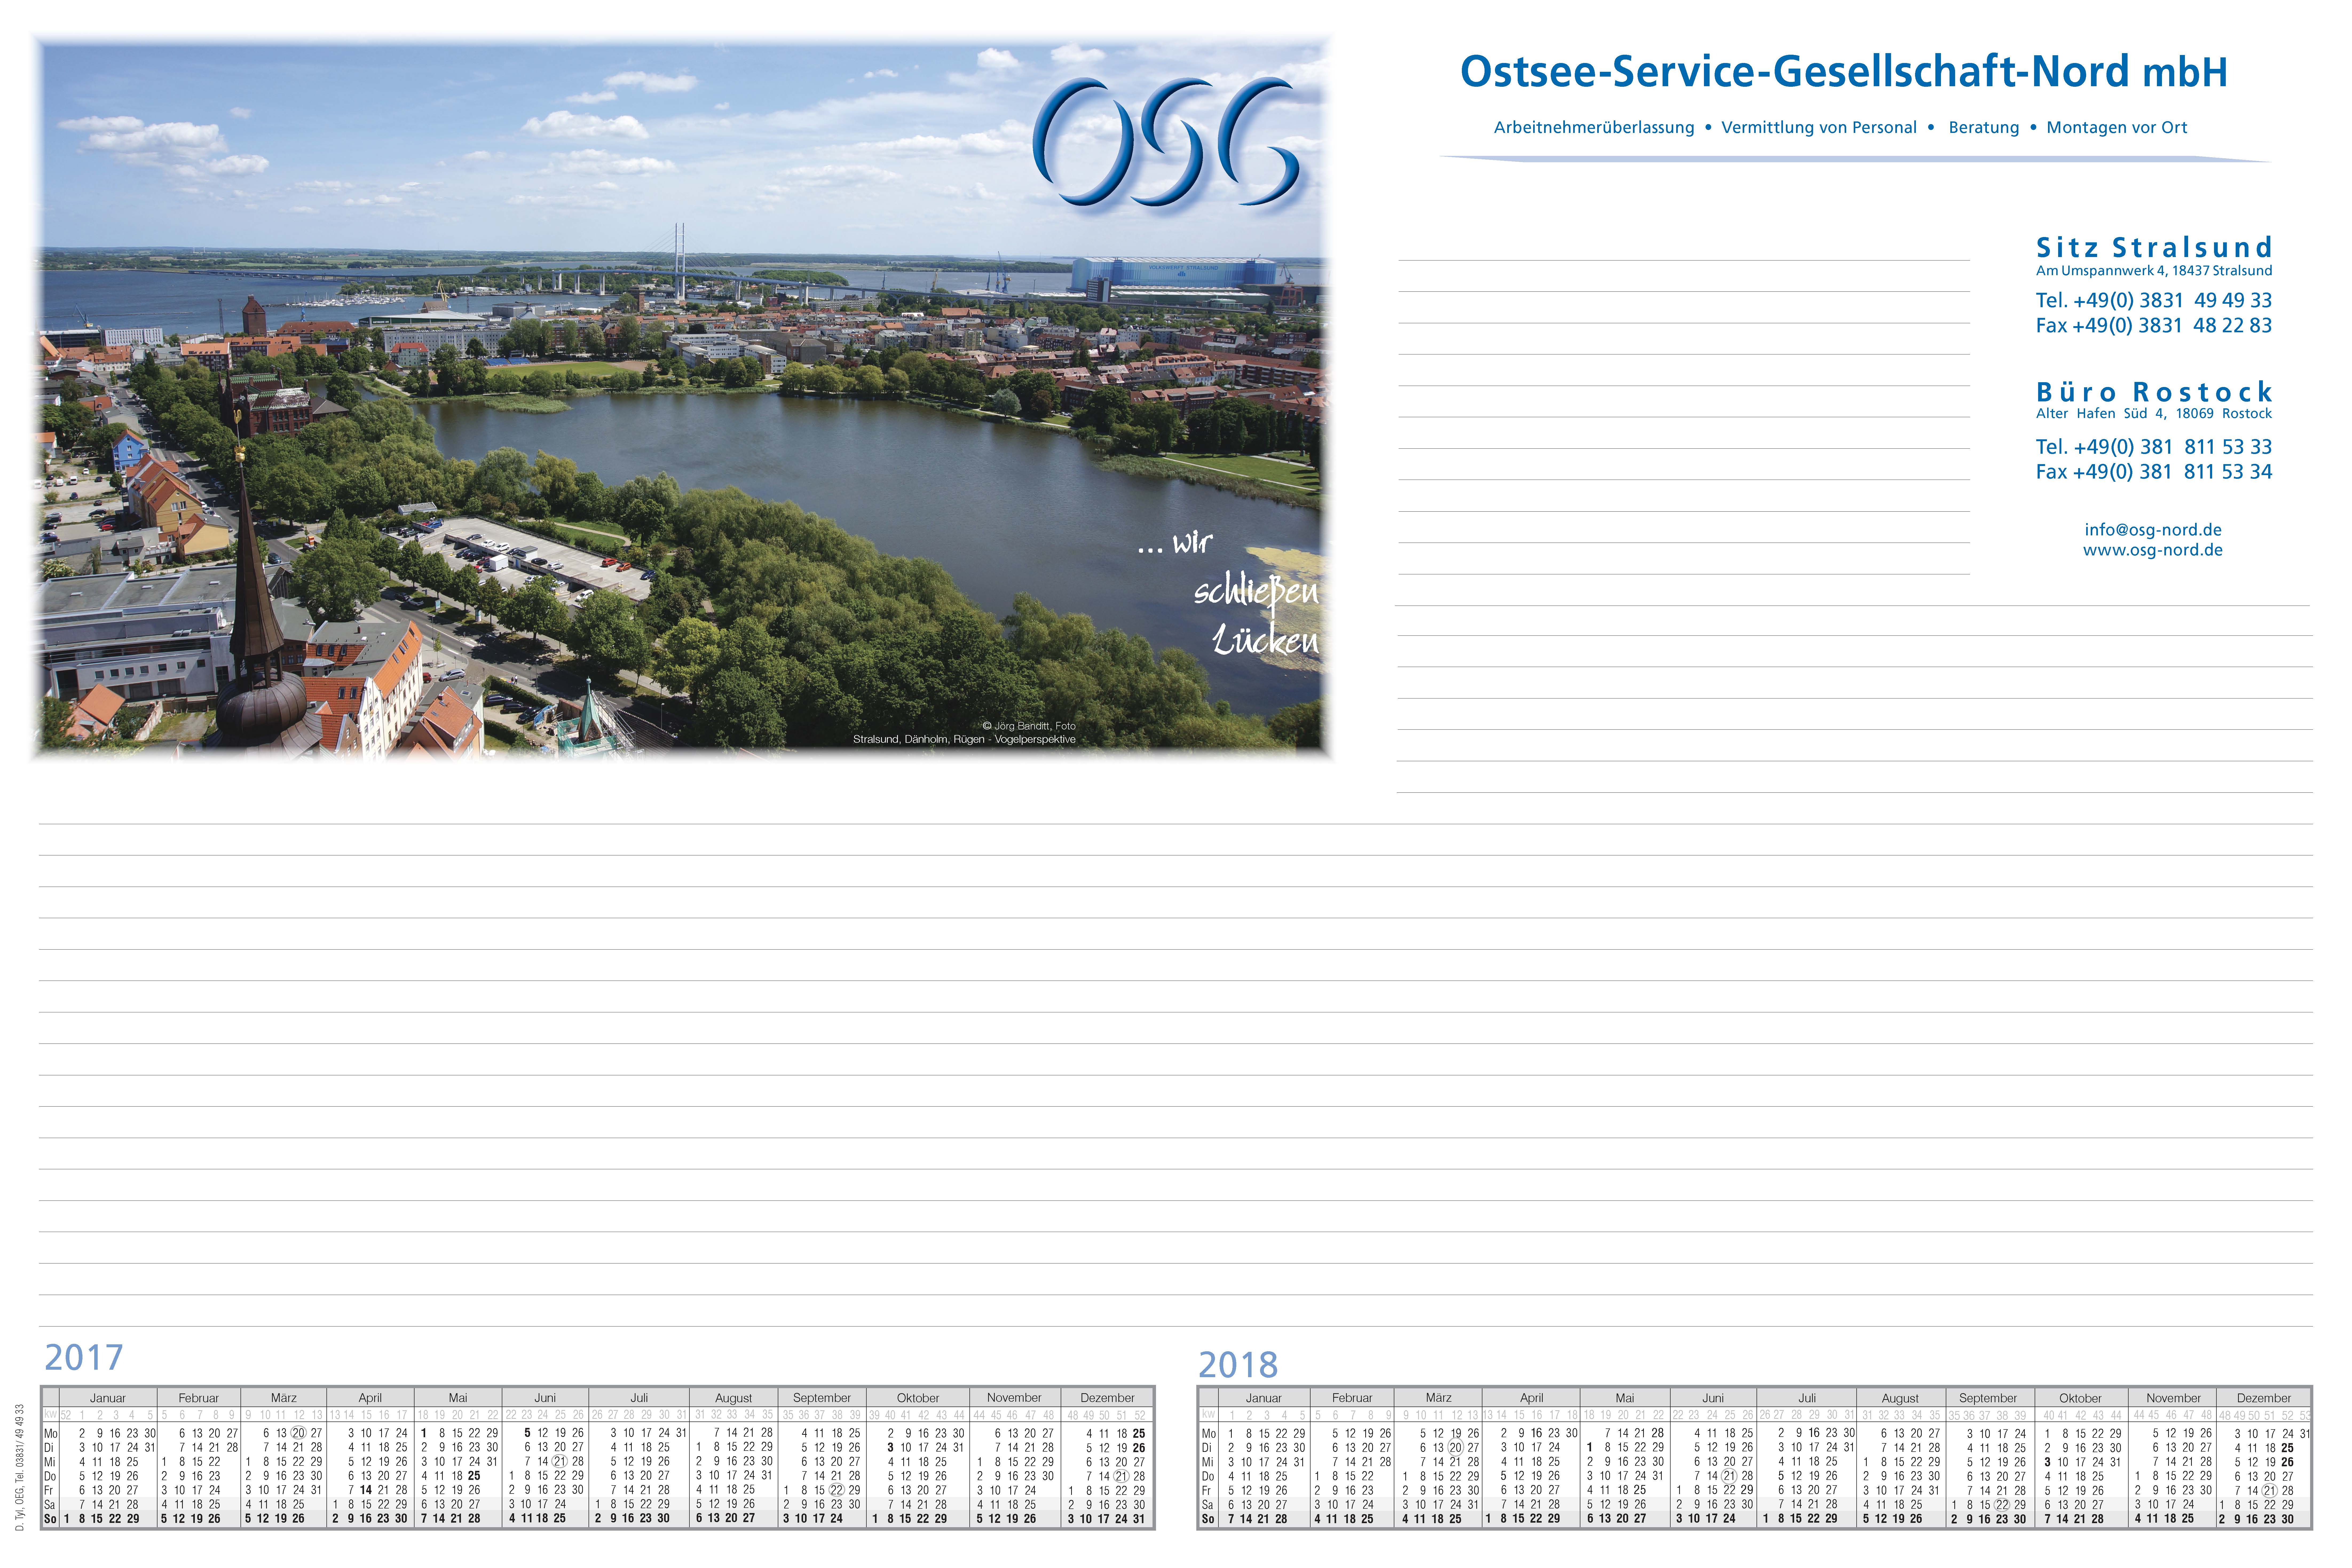 Schreibtischunterlage 2017/2018 für die Ostsee-Service-Gesellschaft-Nord mbH in Stralsund